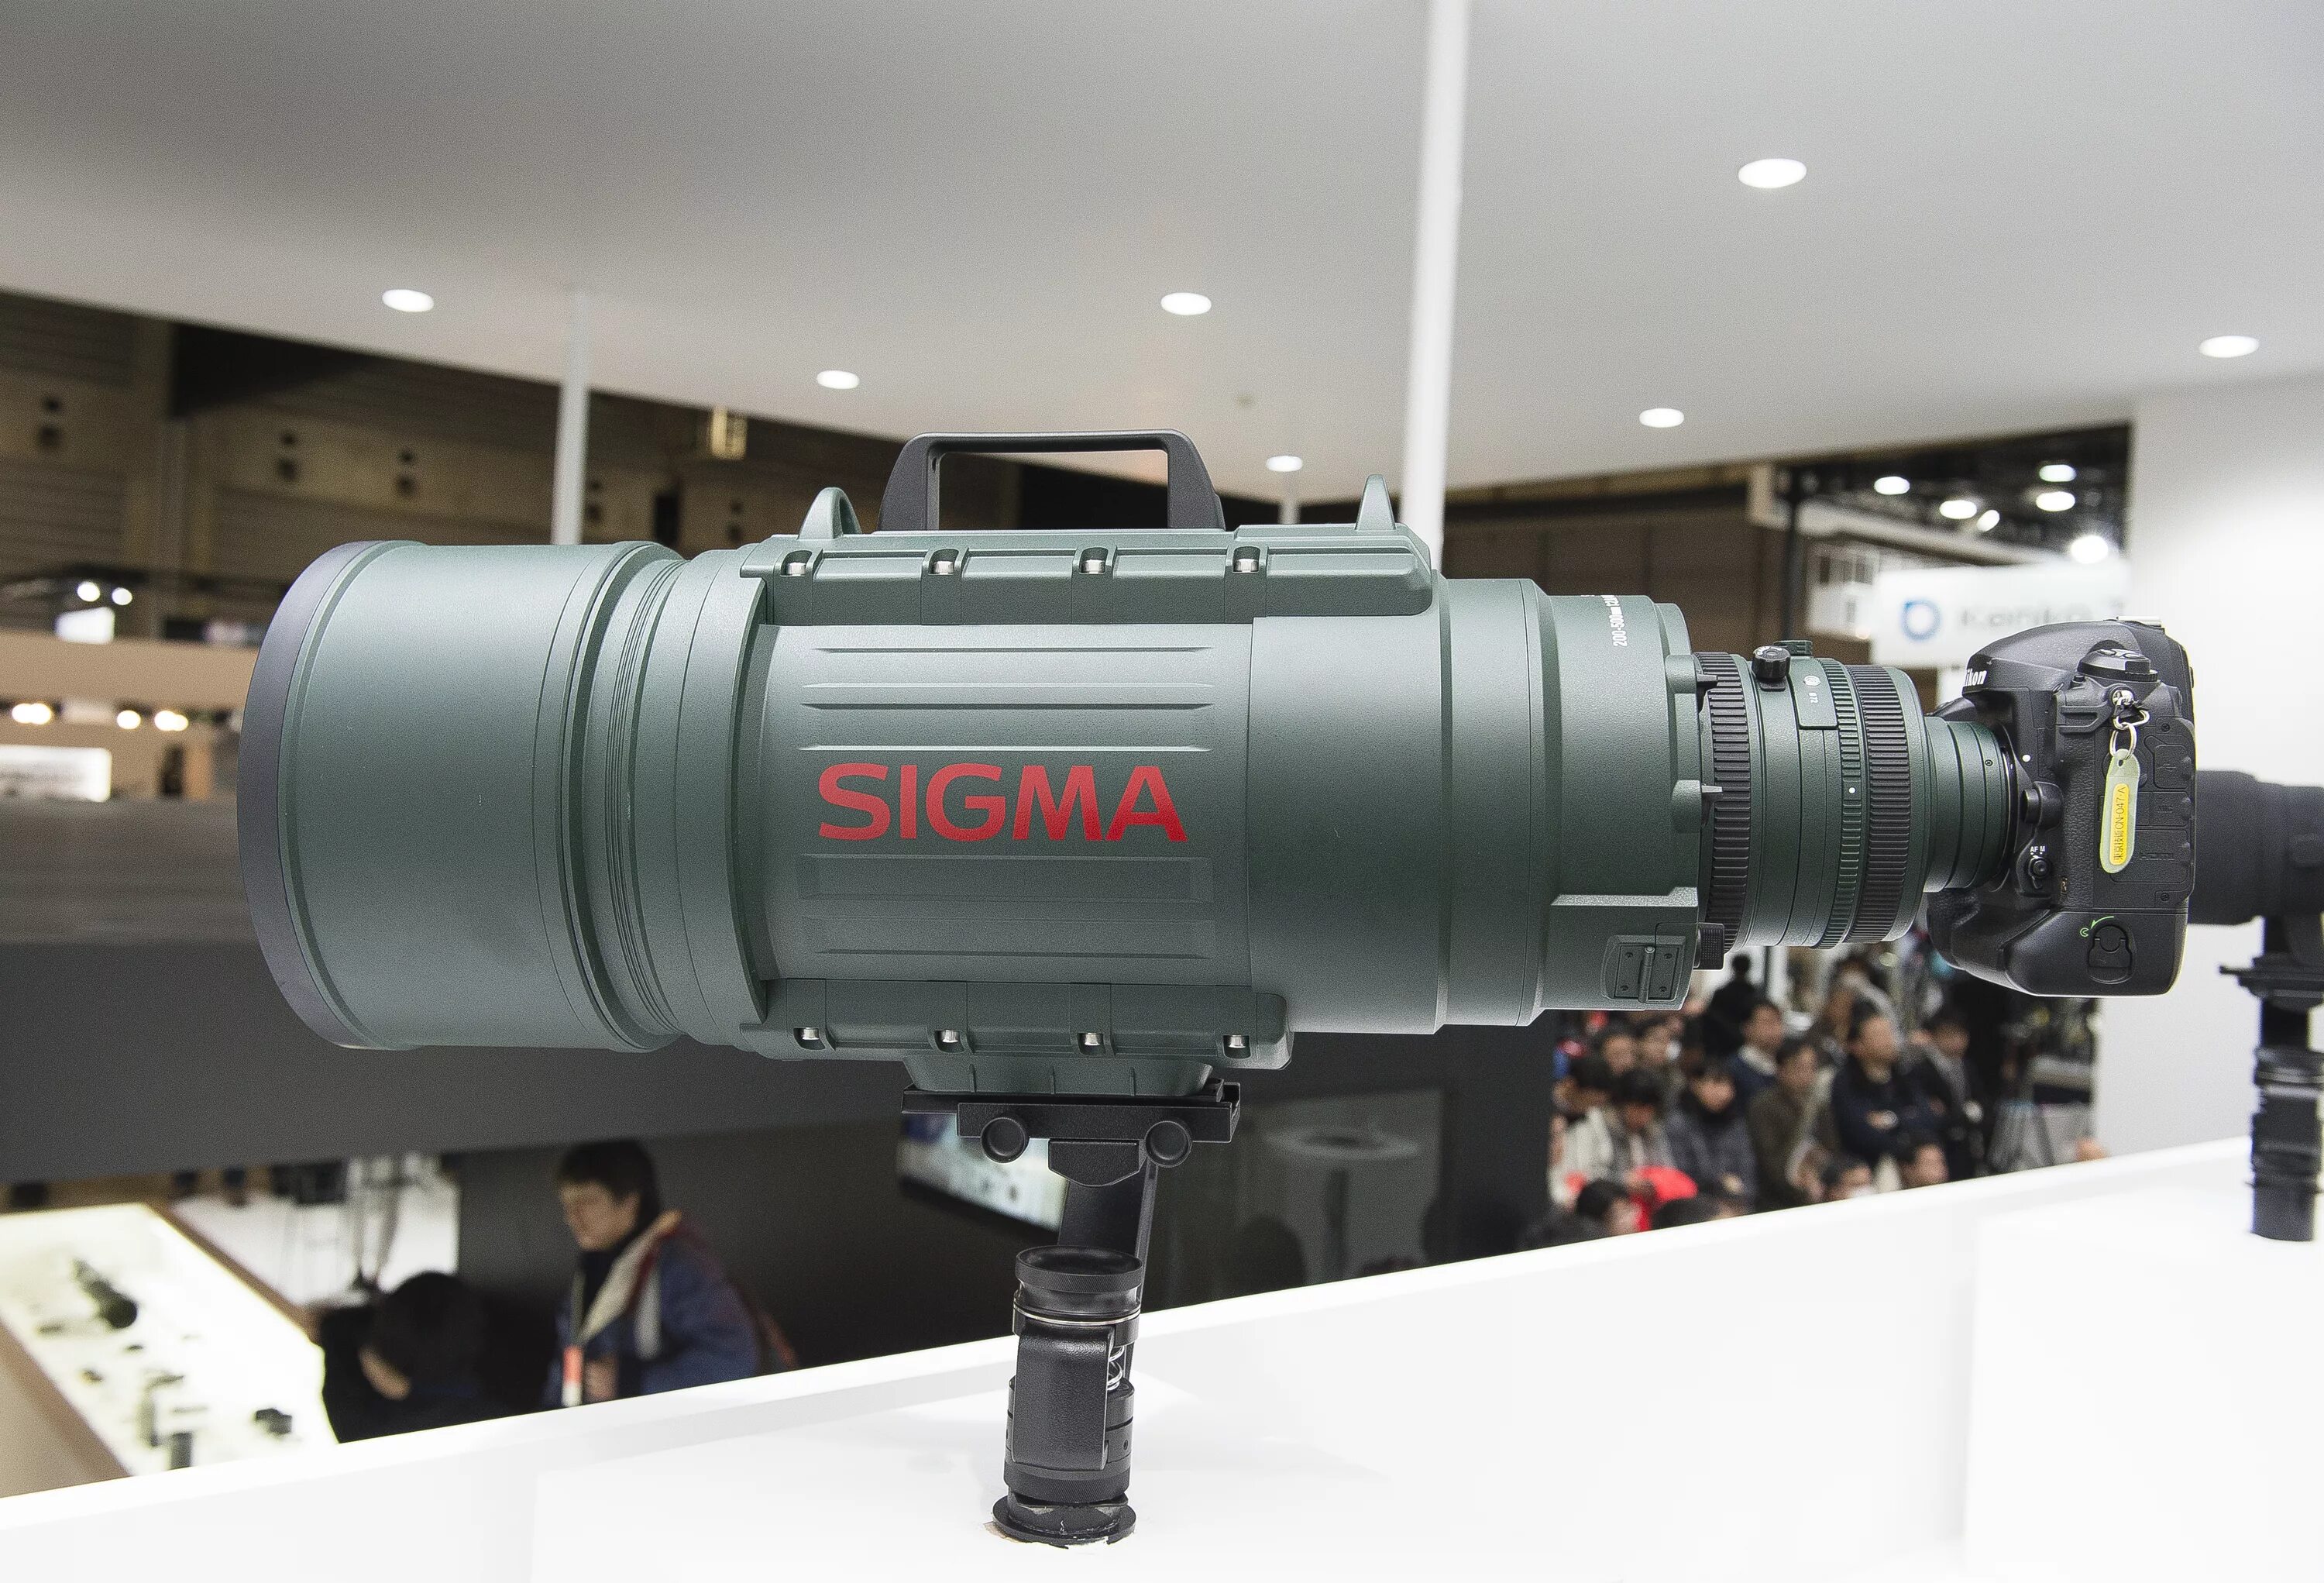 Sigma f2. Sigma 200-500mm f/2.8 apo ex DG. Sigma 200-500 mm f2.8. Sigma 200-500 f/2.8. Sigma af 200-500mm f/2.8.